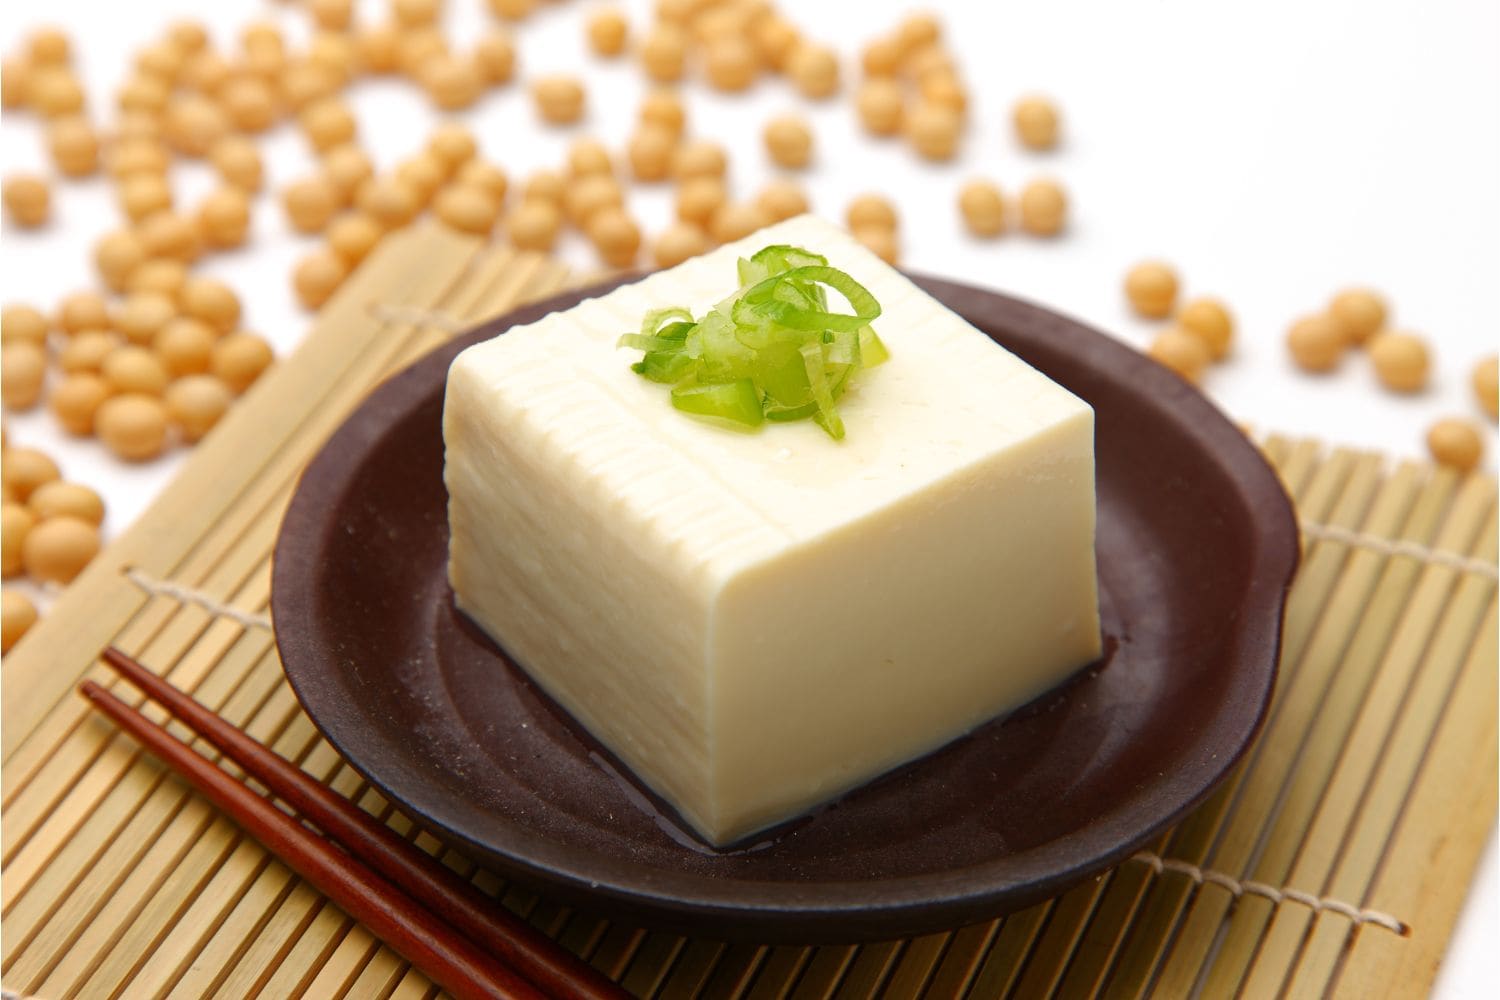 Bloc de tofu